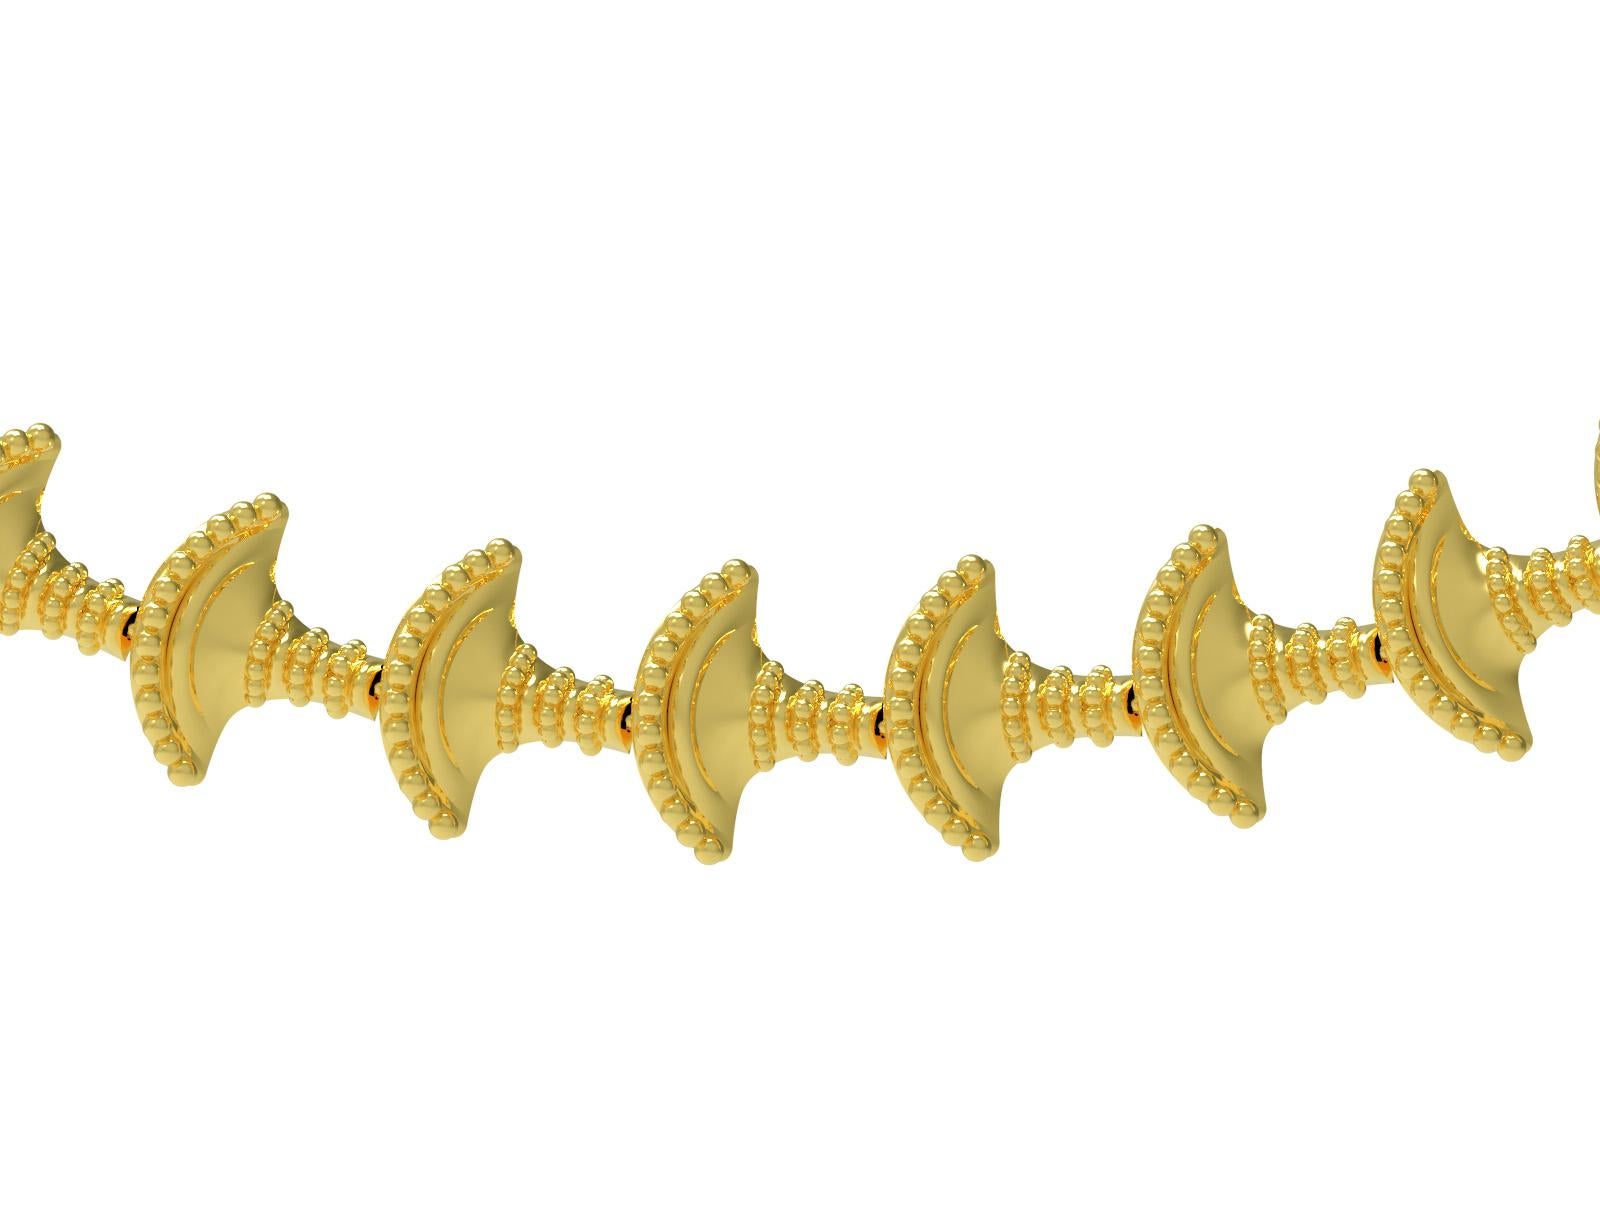 Bracelet en or jaune 18 carats à maillons en forme de panier d'inspiration minoenne par Romae Jewelry. Ce superbe bracelet s'inspire d'une pièce d'or minoenne provenant de la région de Knossos, en Crète, datant d'environ 1450 av. Il est composé de